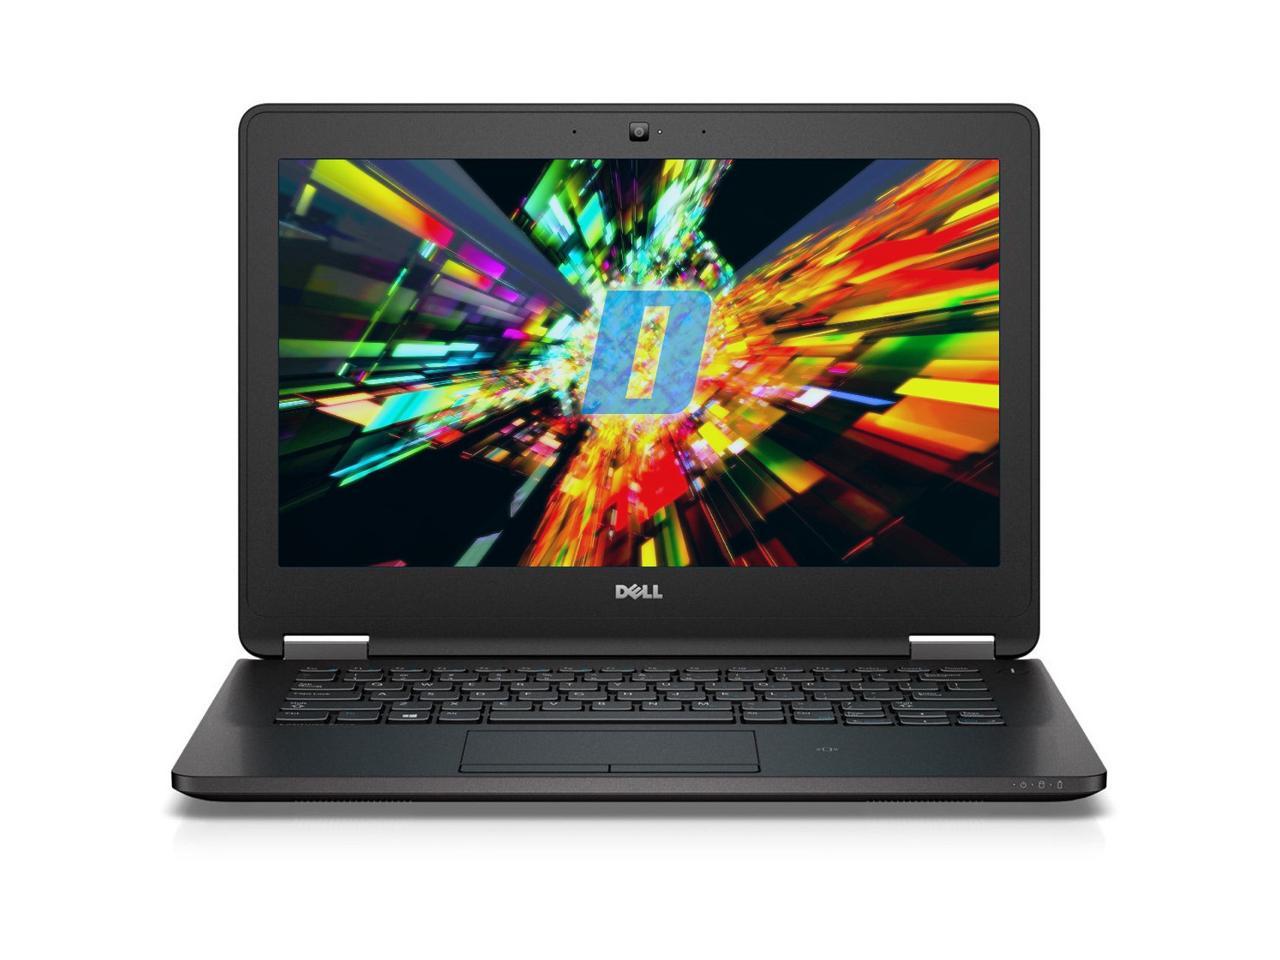 Dell Latitude E7270 12.5" Laptop, Intel Core i7 6600U 2.6Ghz, 16GB DDR4, 256GB M.2 SSD, HDMI, Webcam, Windows 10